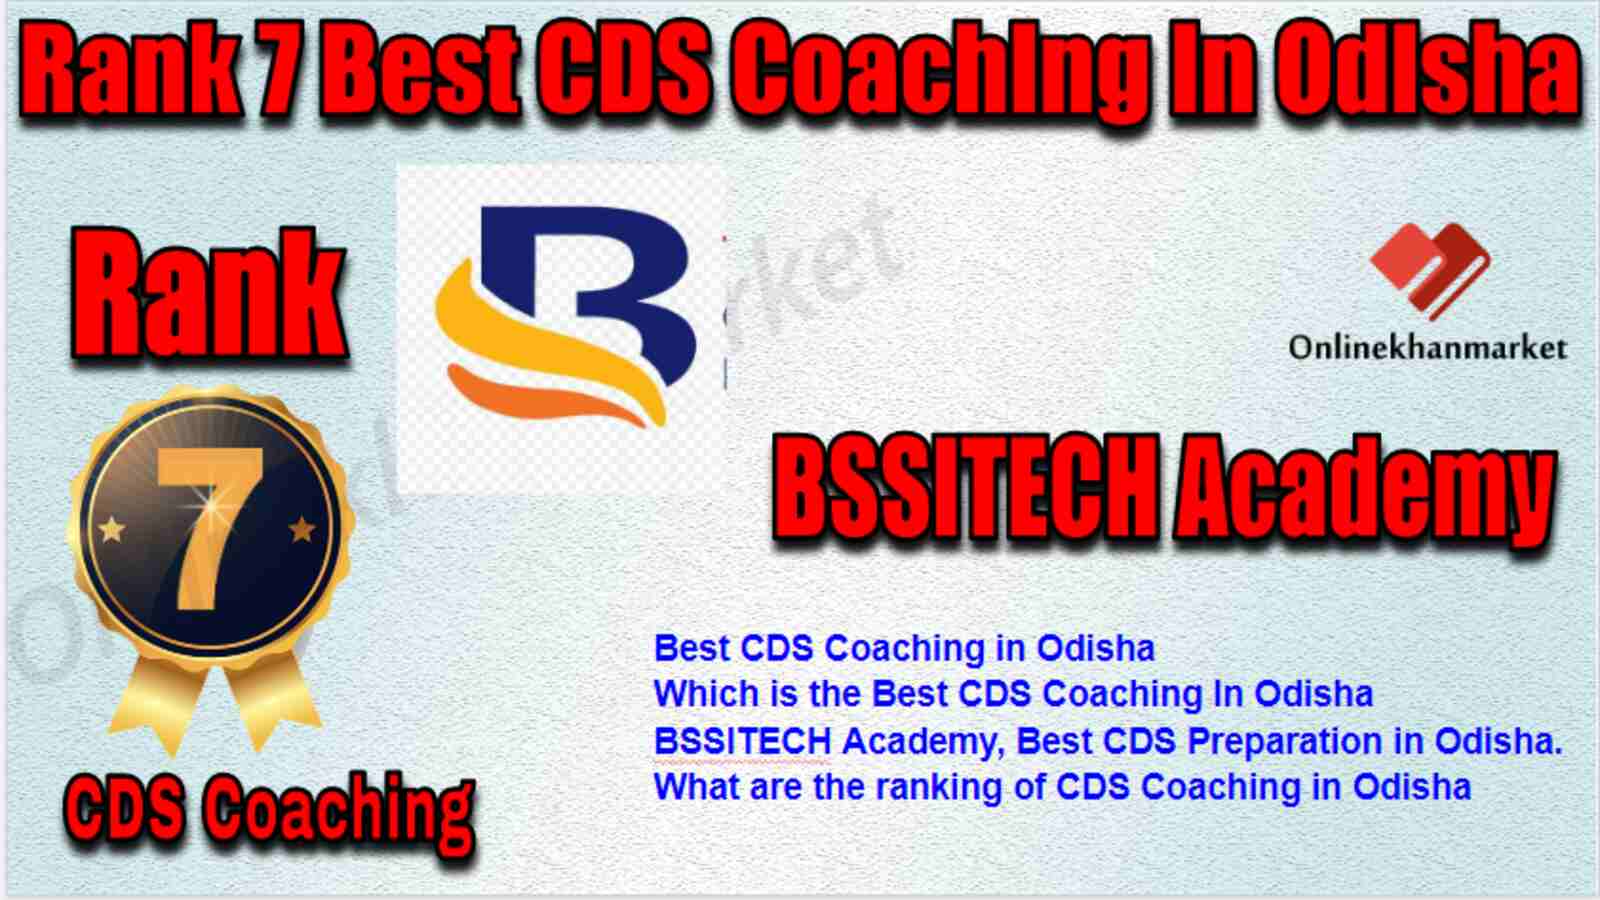 Rank 7 Best CDS Coaching in Odisha